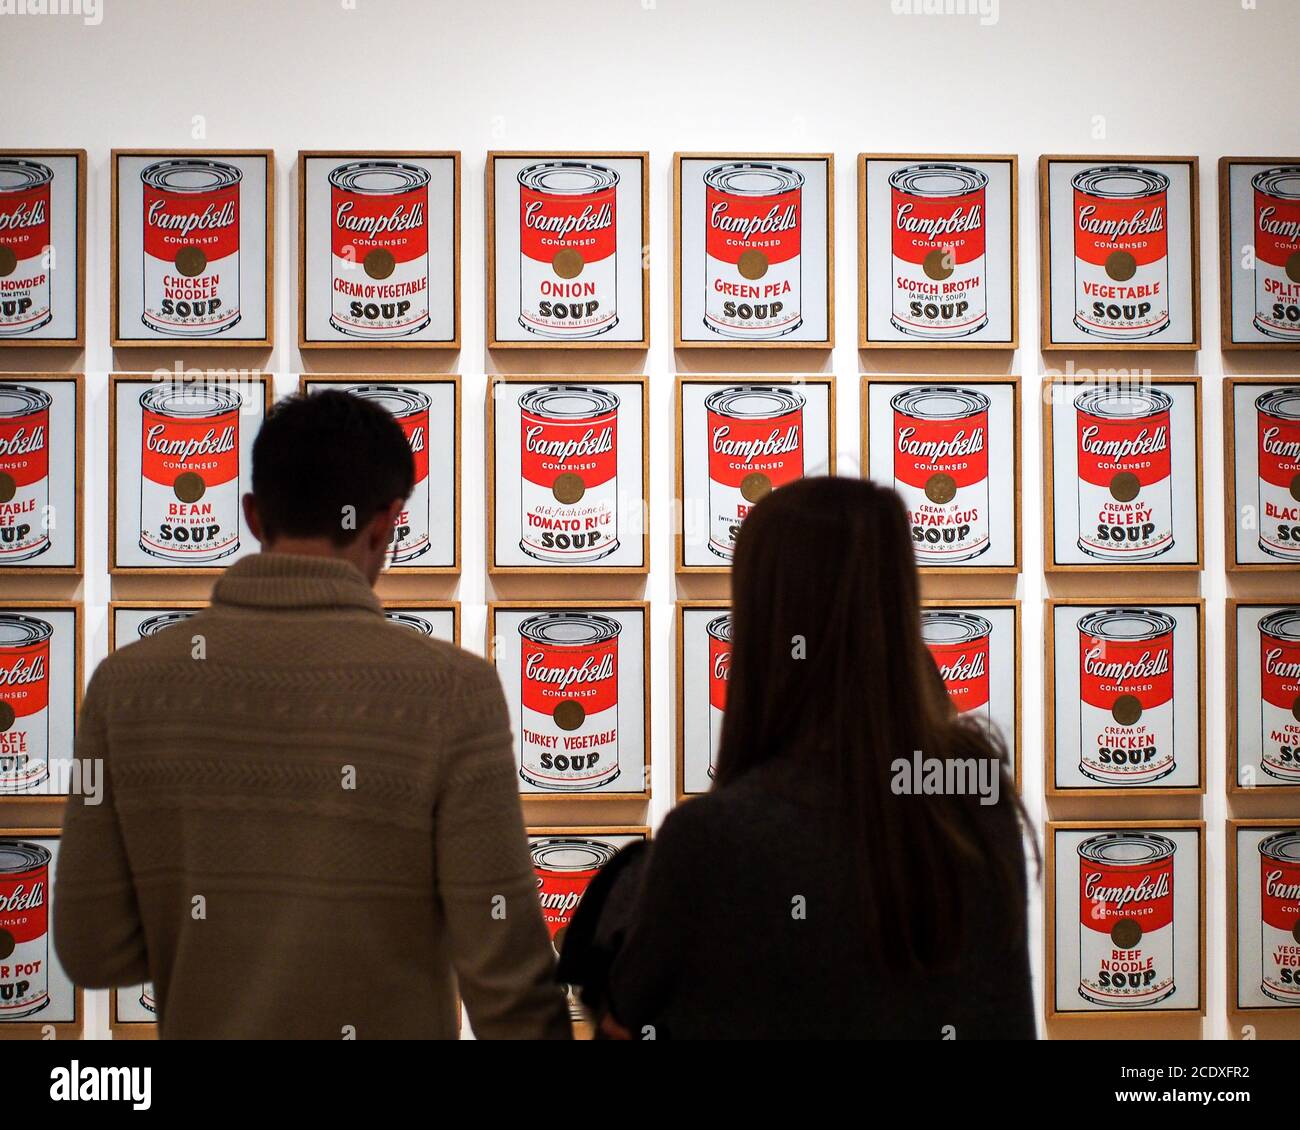 Museum of Modern Art, oder MoMA, Manhattan, New York, Vereinigte Staaten von Amerika - Campbell's Suppendosen, Kunst von Andy Warhol. Führende Figur in der Pop-Art. Stockfoto